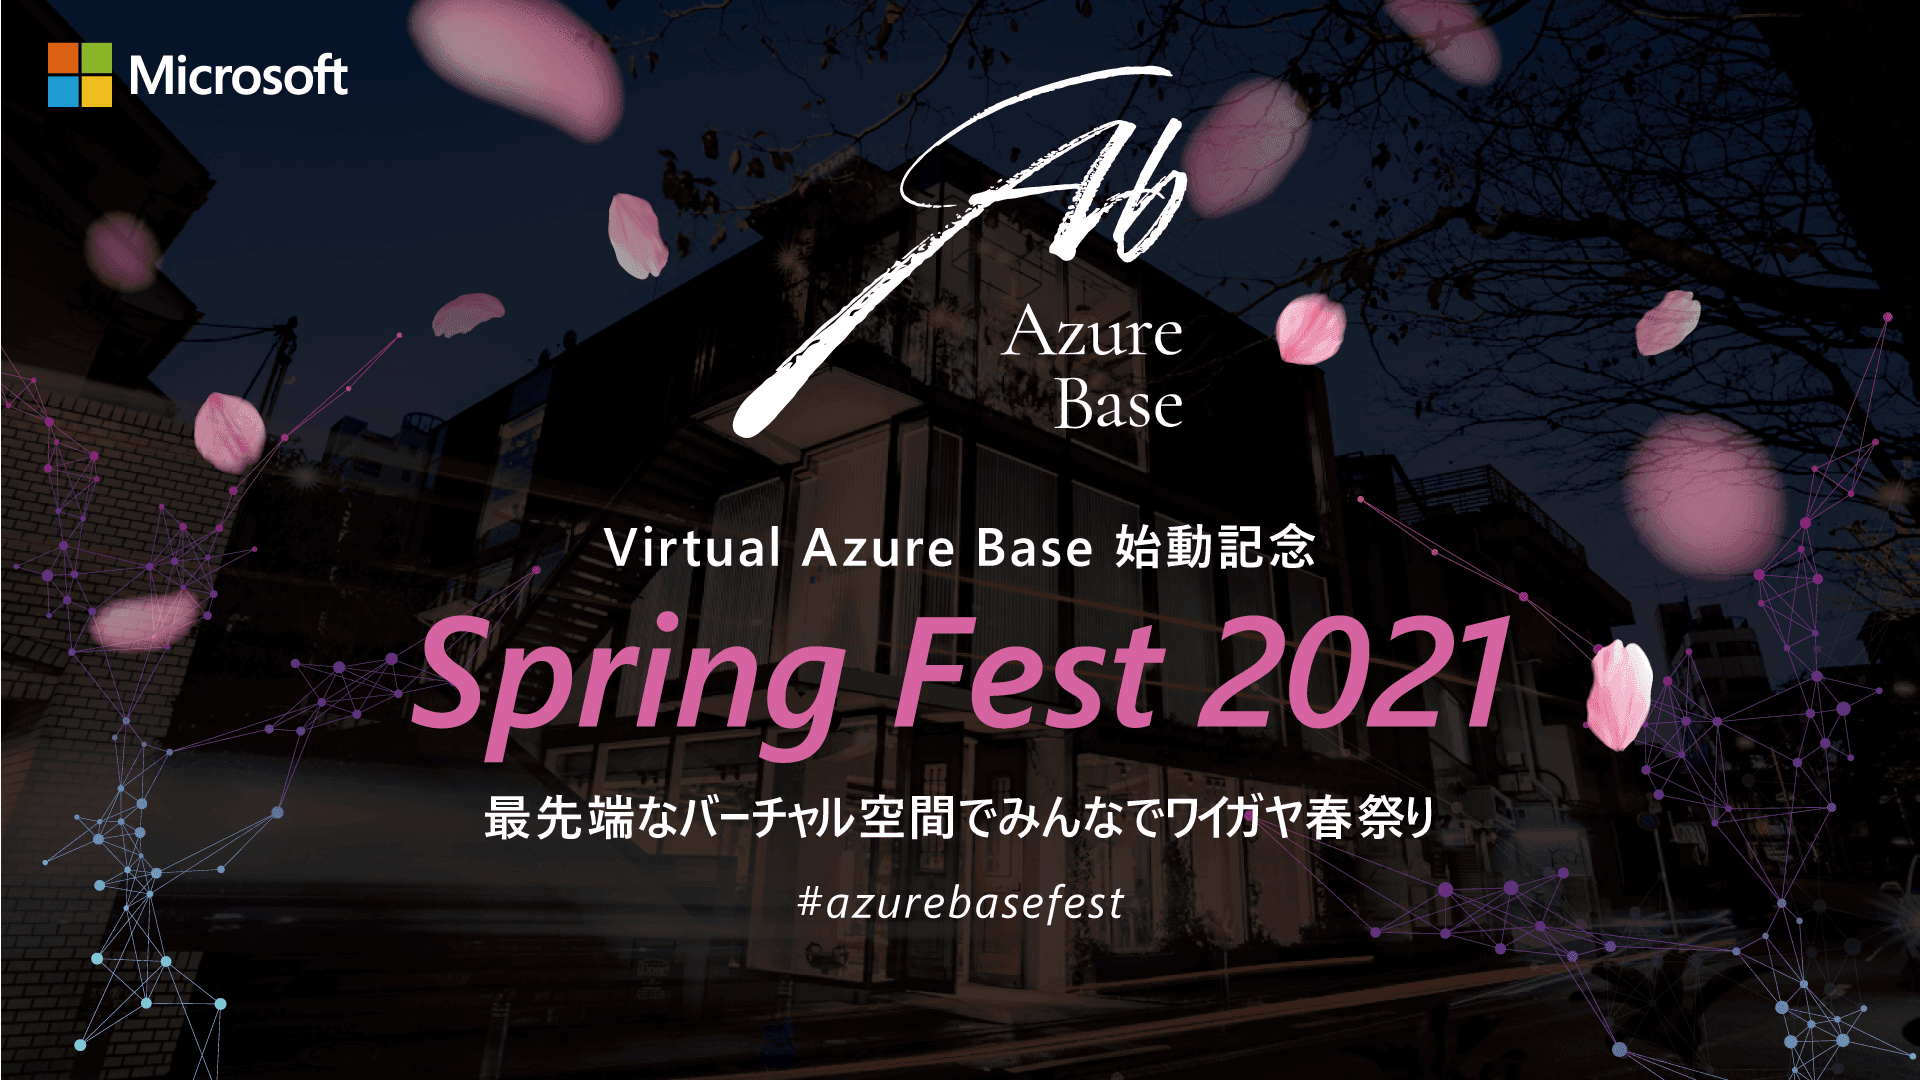 2021_0331_001_fixer_cloudconfig_virtual_event_service_azure_base_spring_fest_2021_001.png